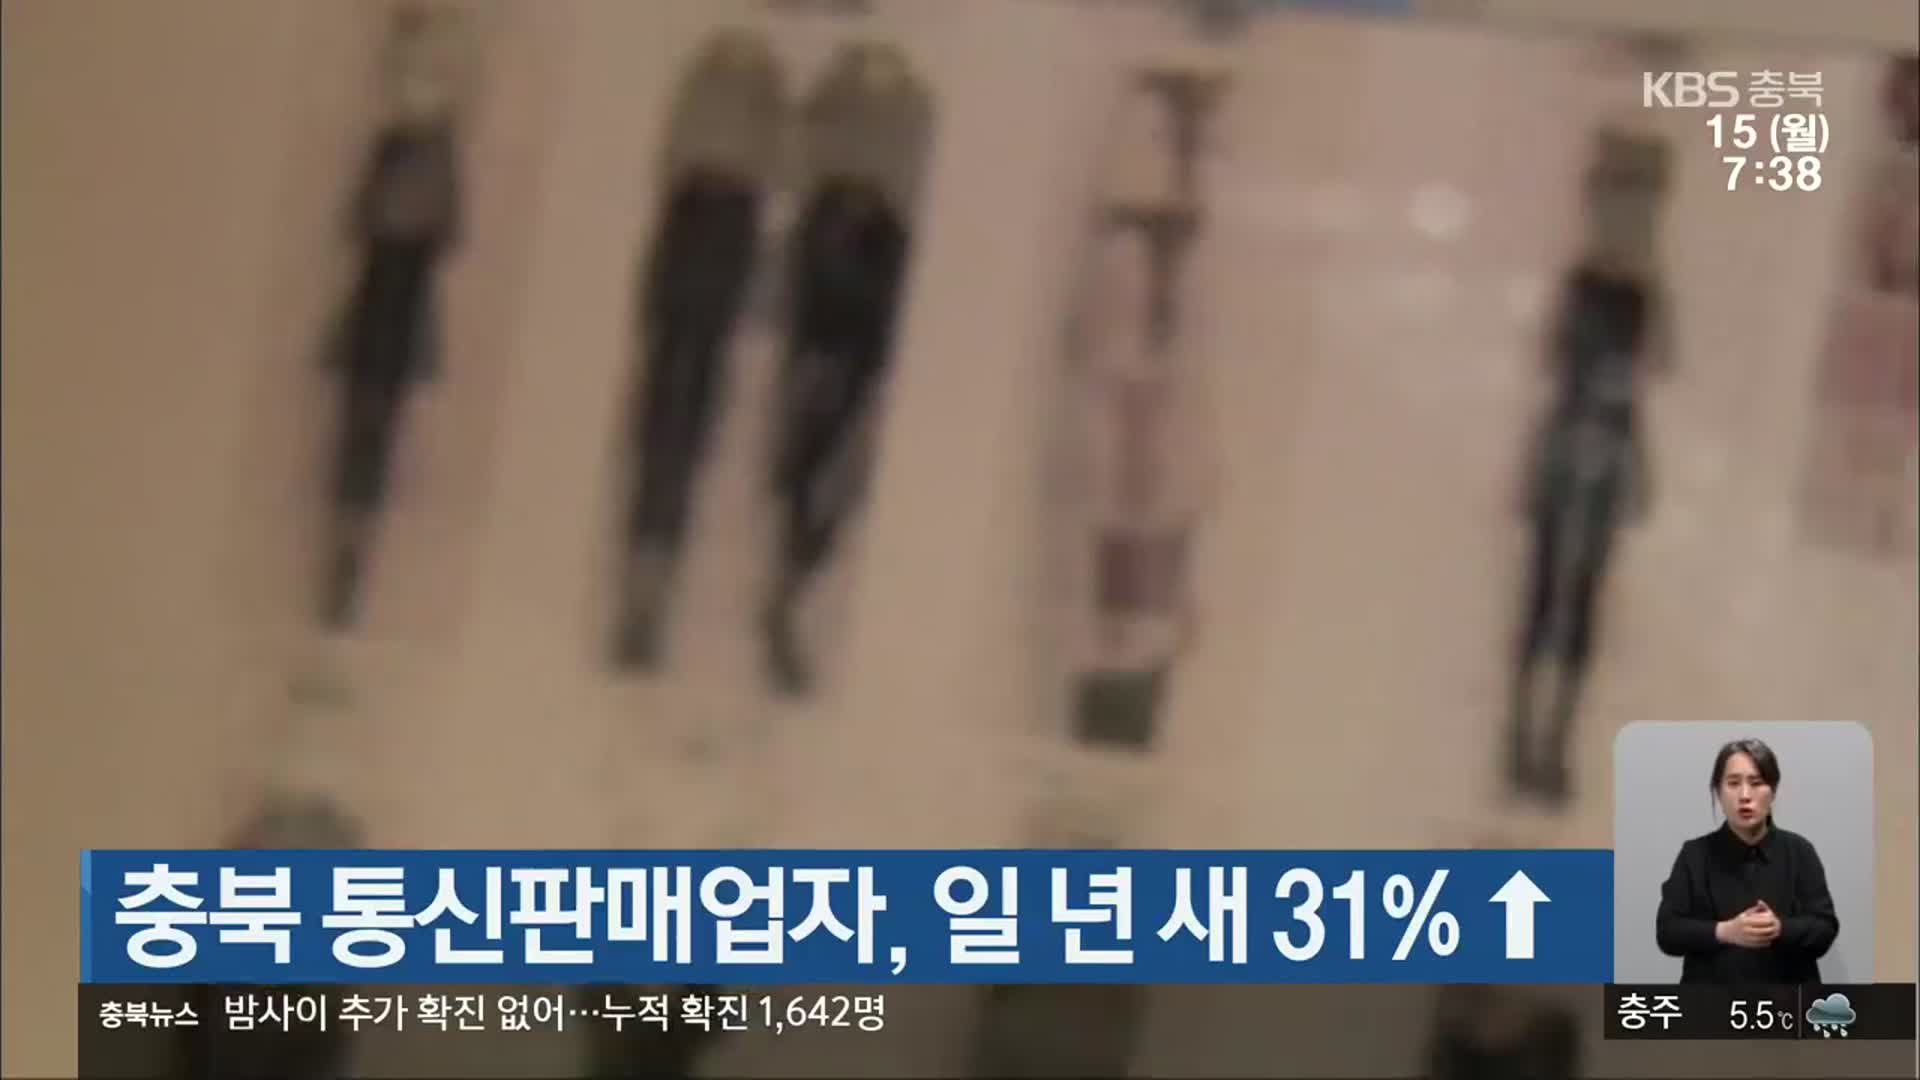 충북 통신판매업자, 일 년 새 31%↑